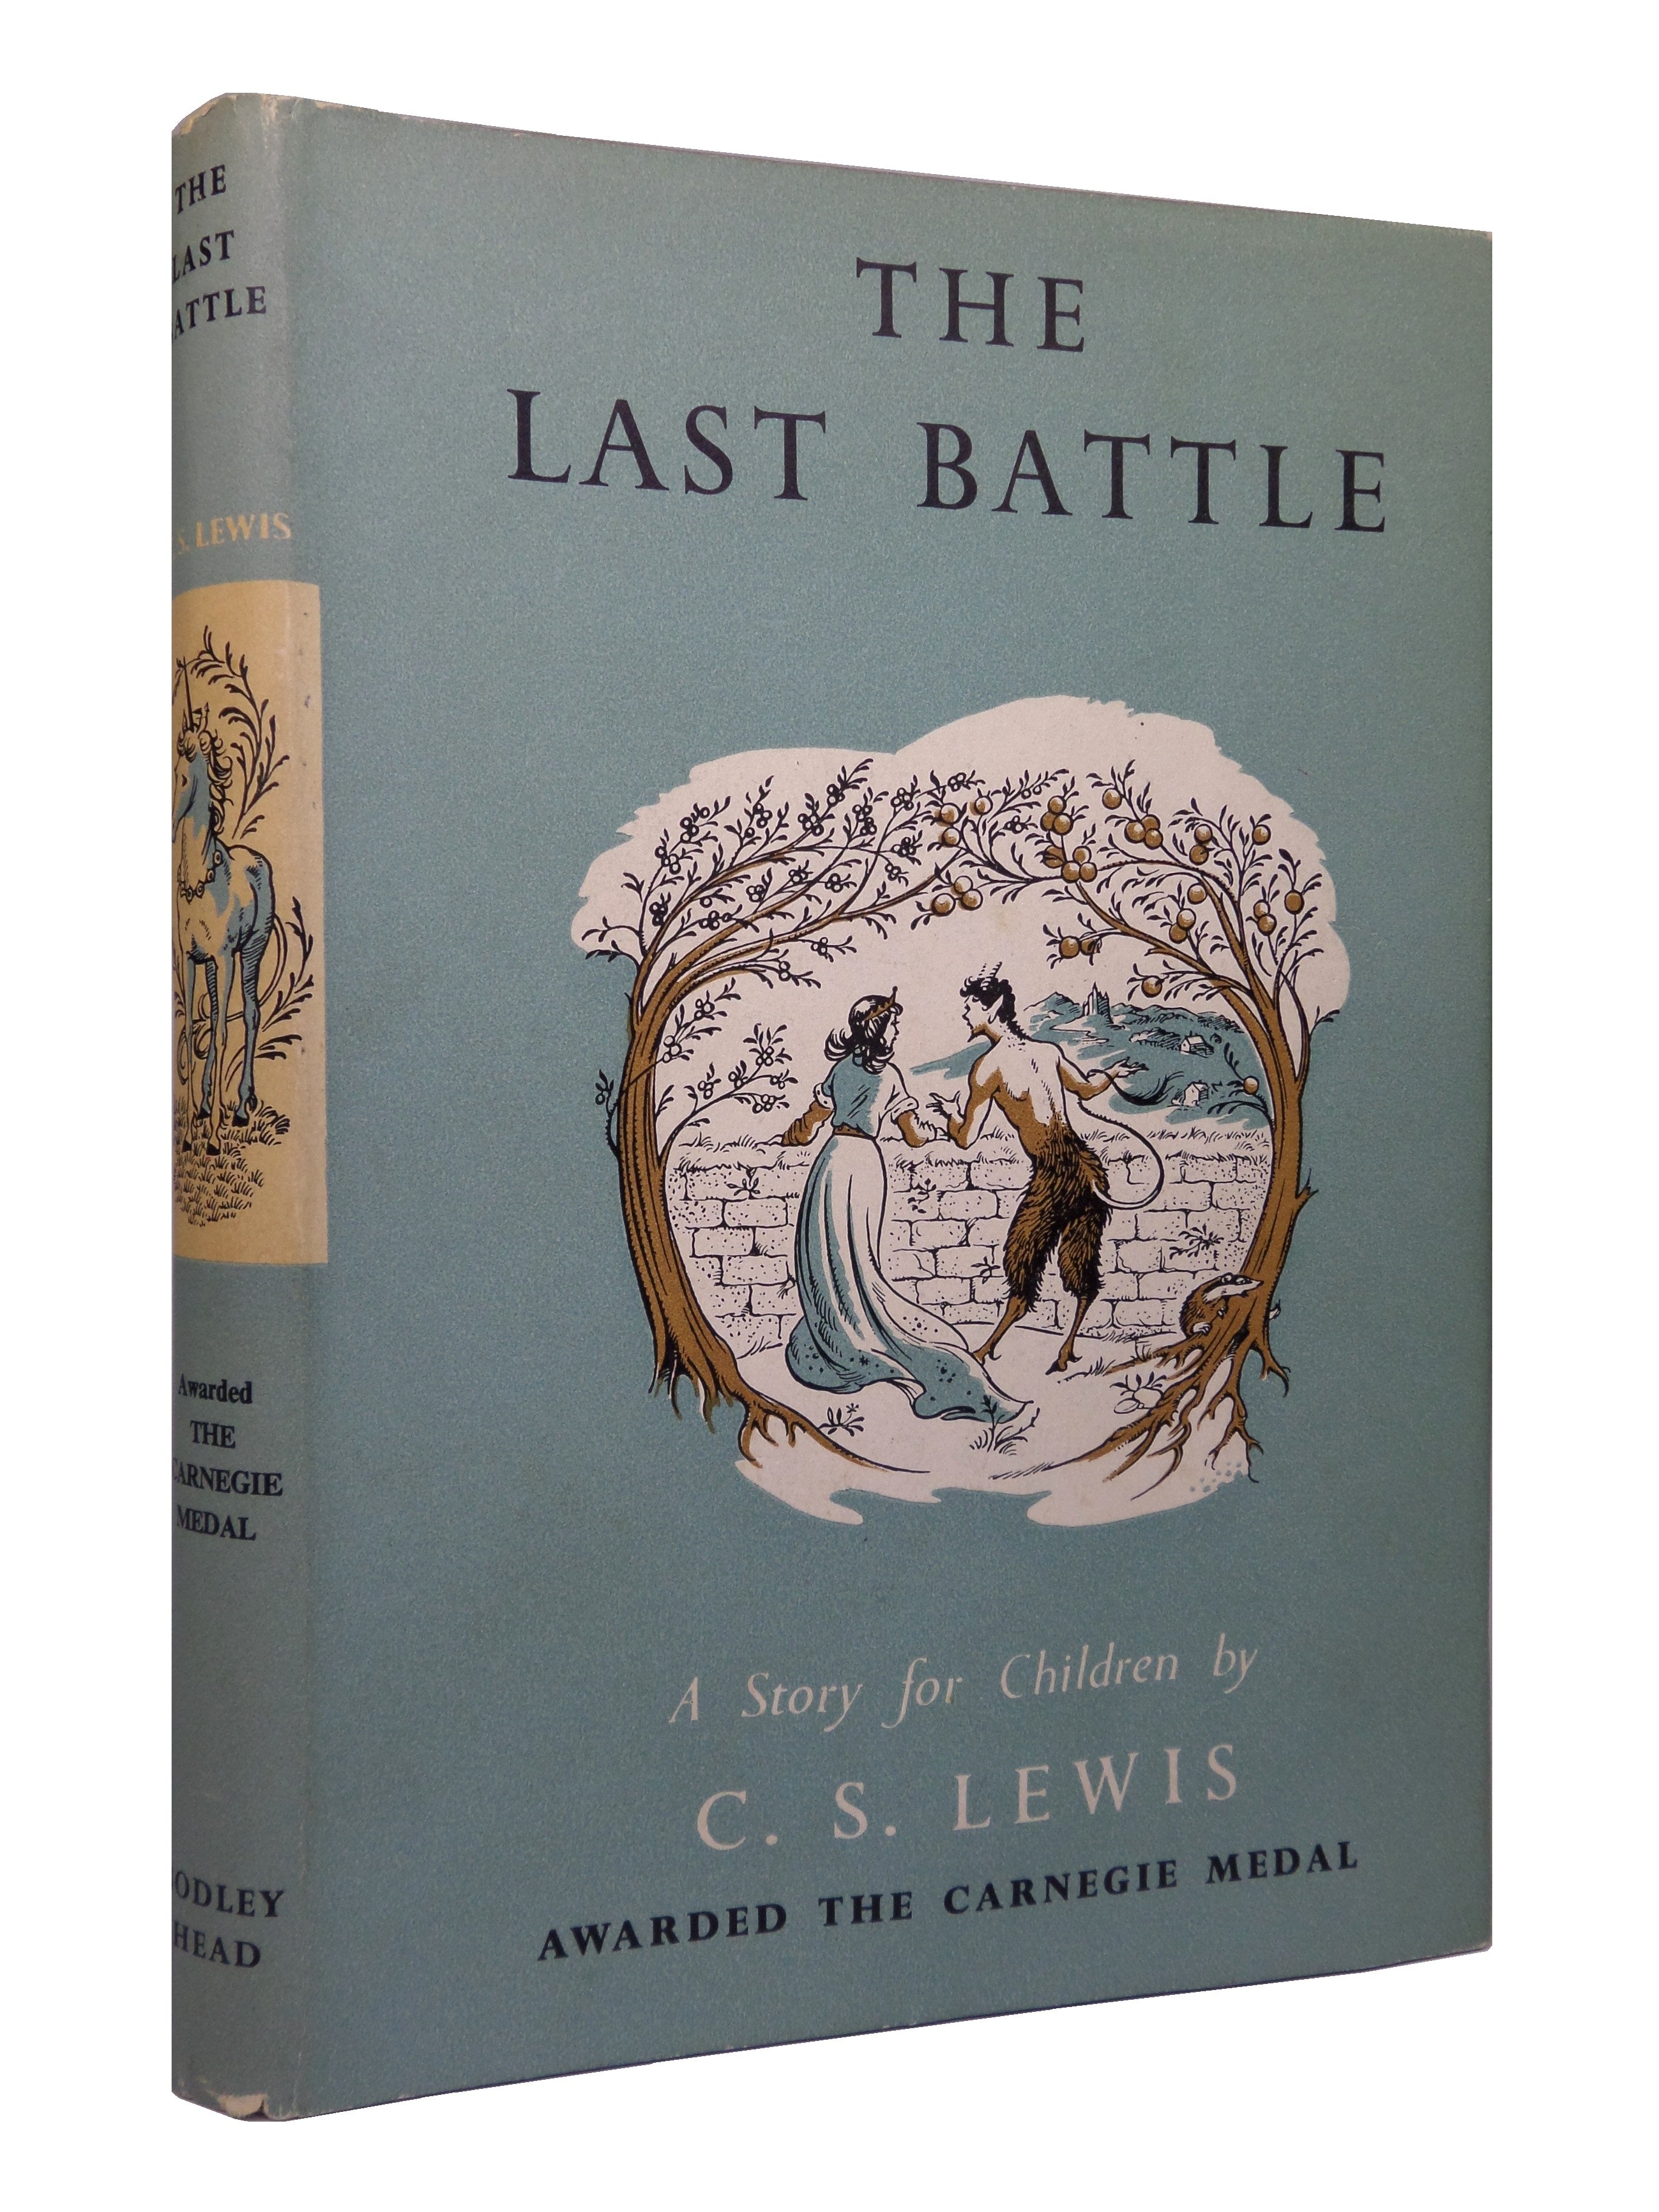 THE LAST BATTLE BY C. S. LEWIS 1961